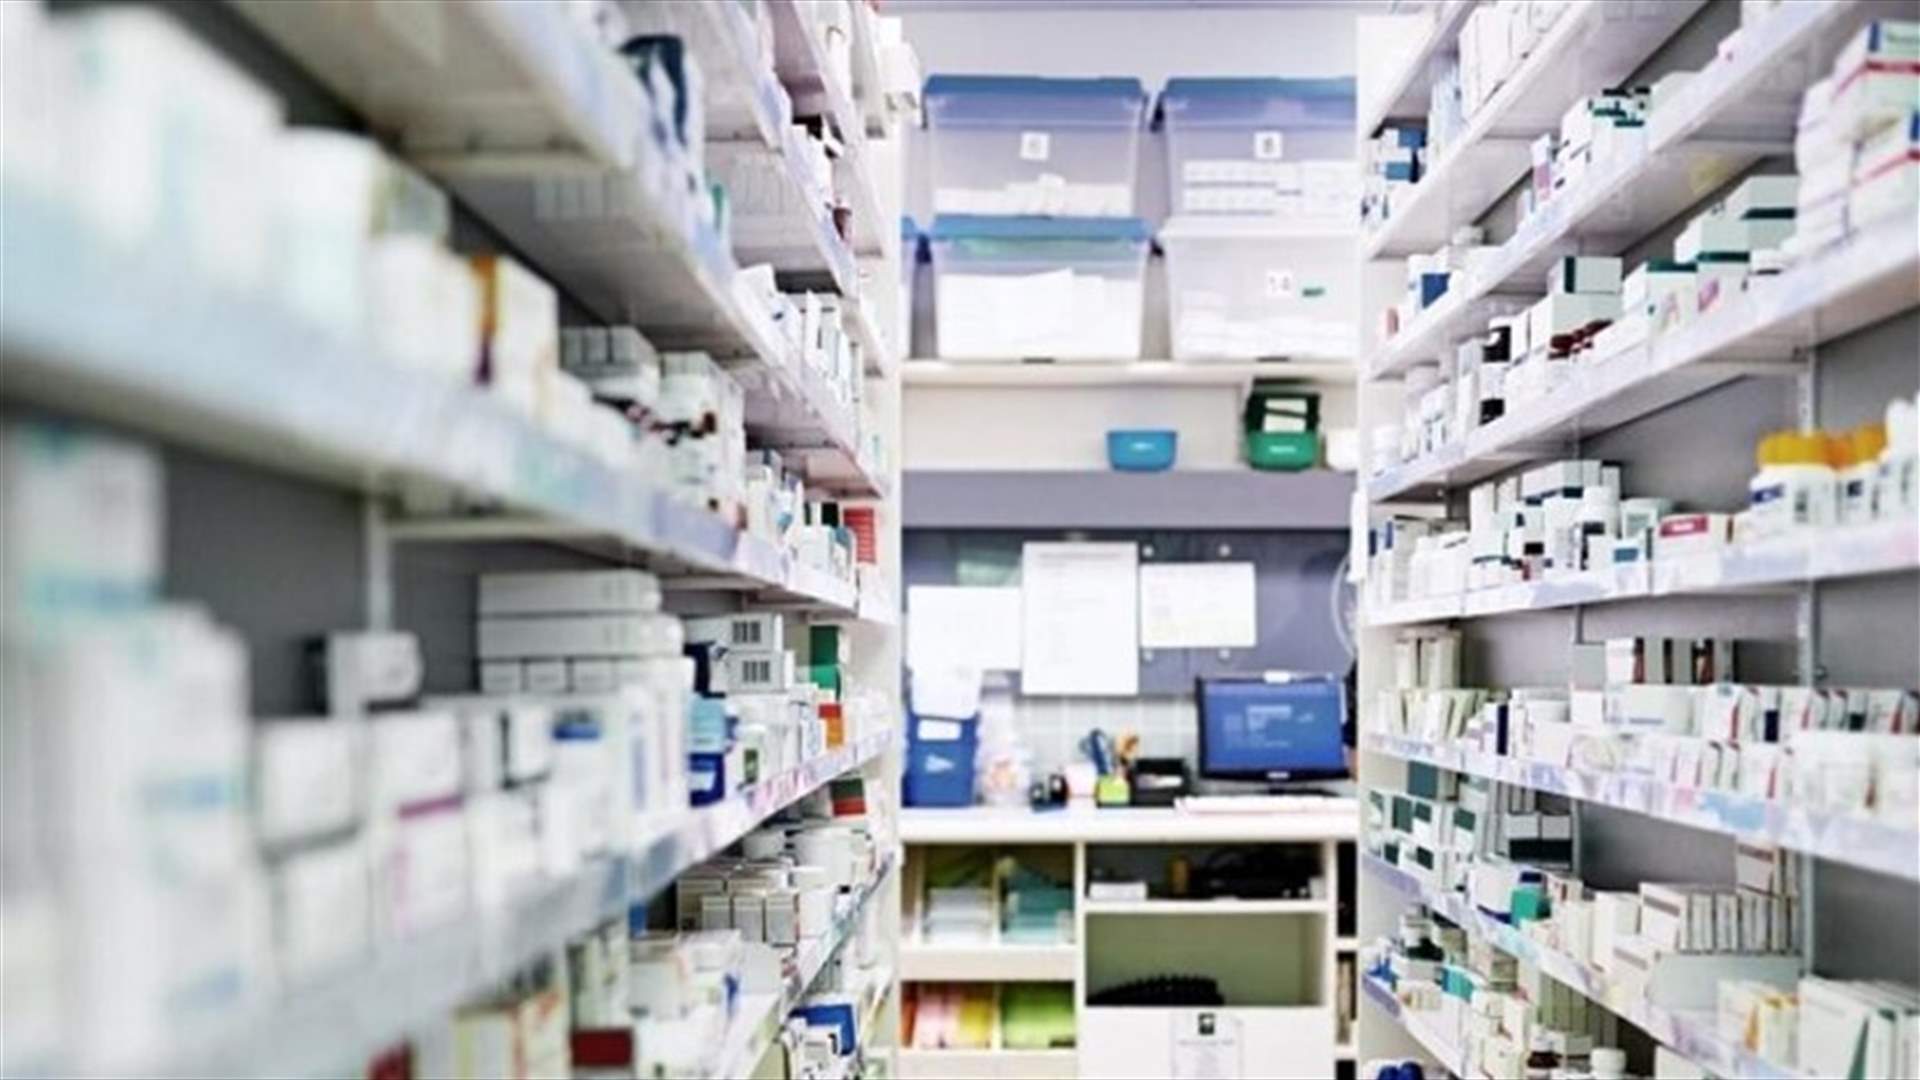 نقابة مستوردي الأدوية تطلب من مجلس الوزراء تأمين إستمرارية السوق عبر فتح إعتماد شهري للأدوية